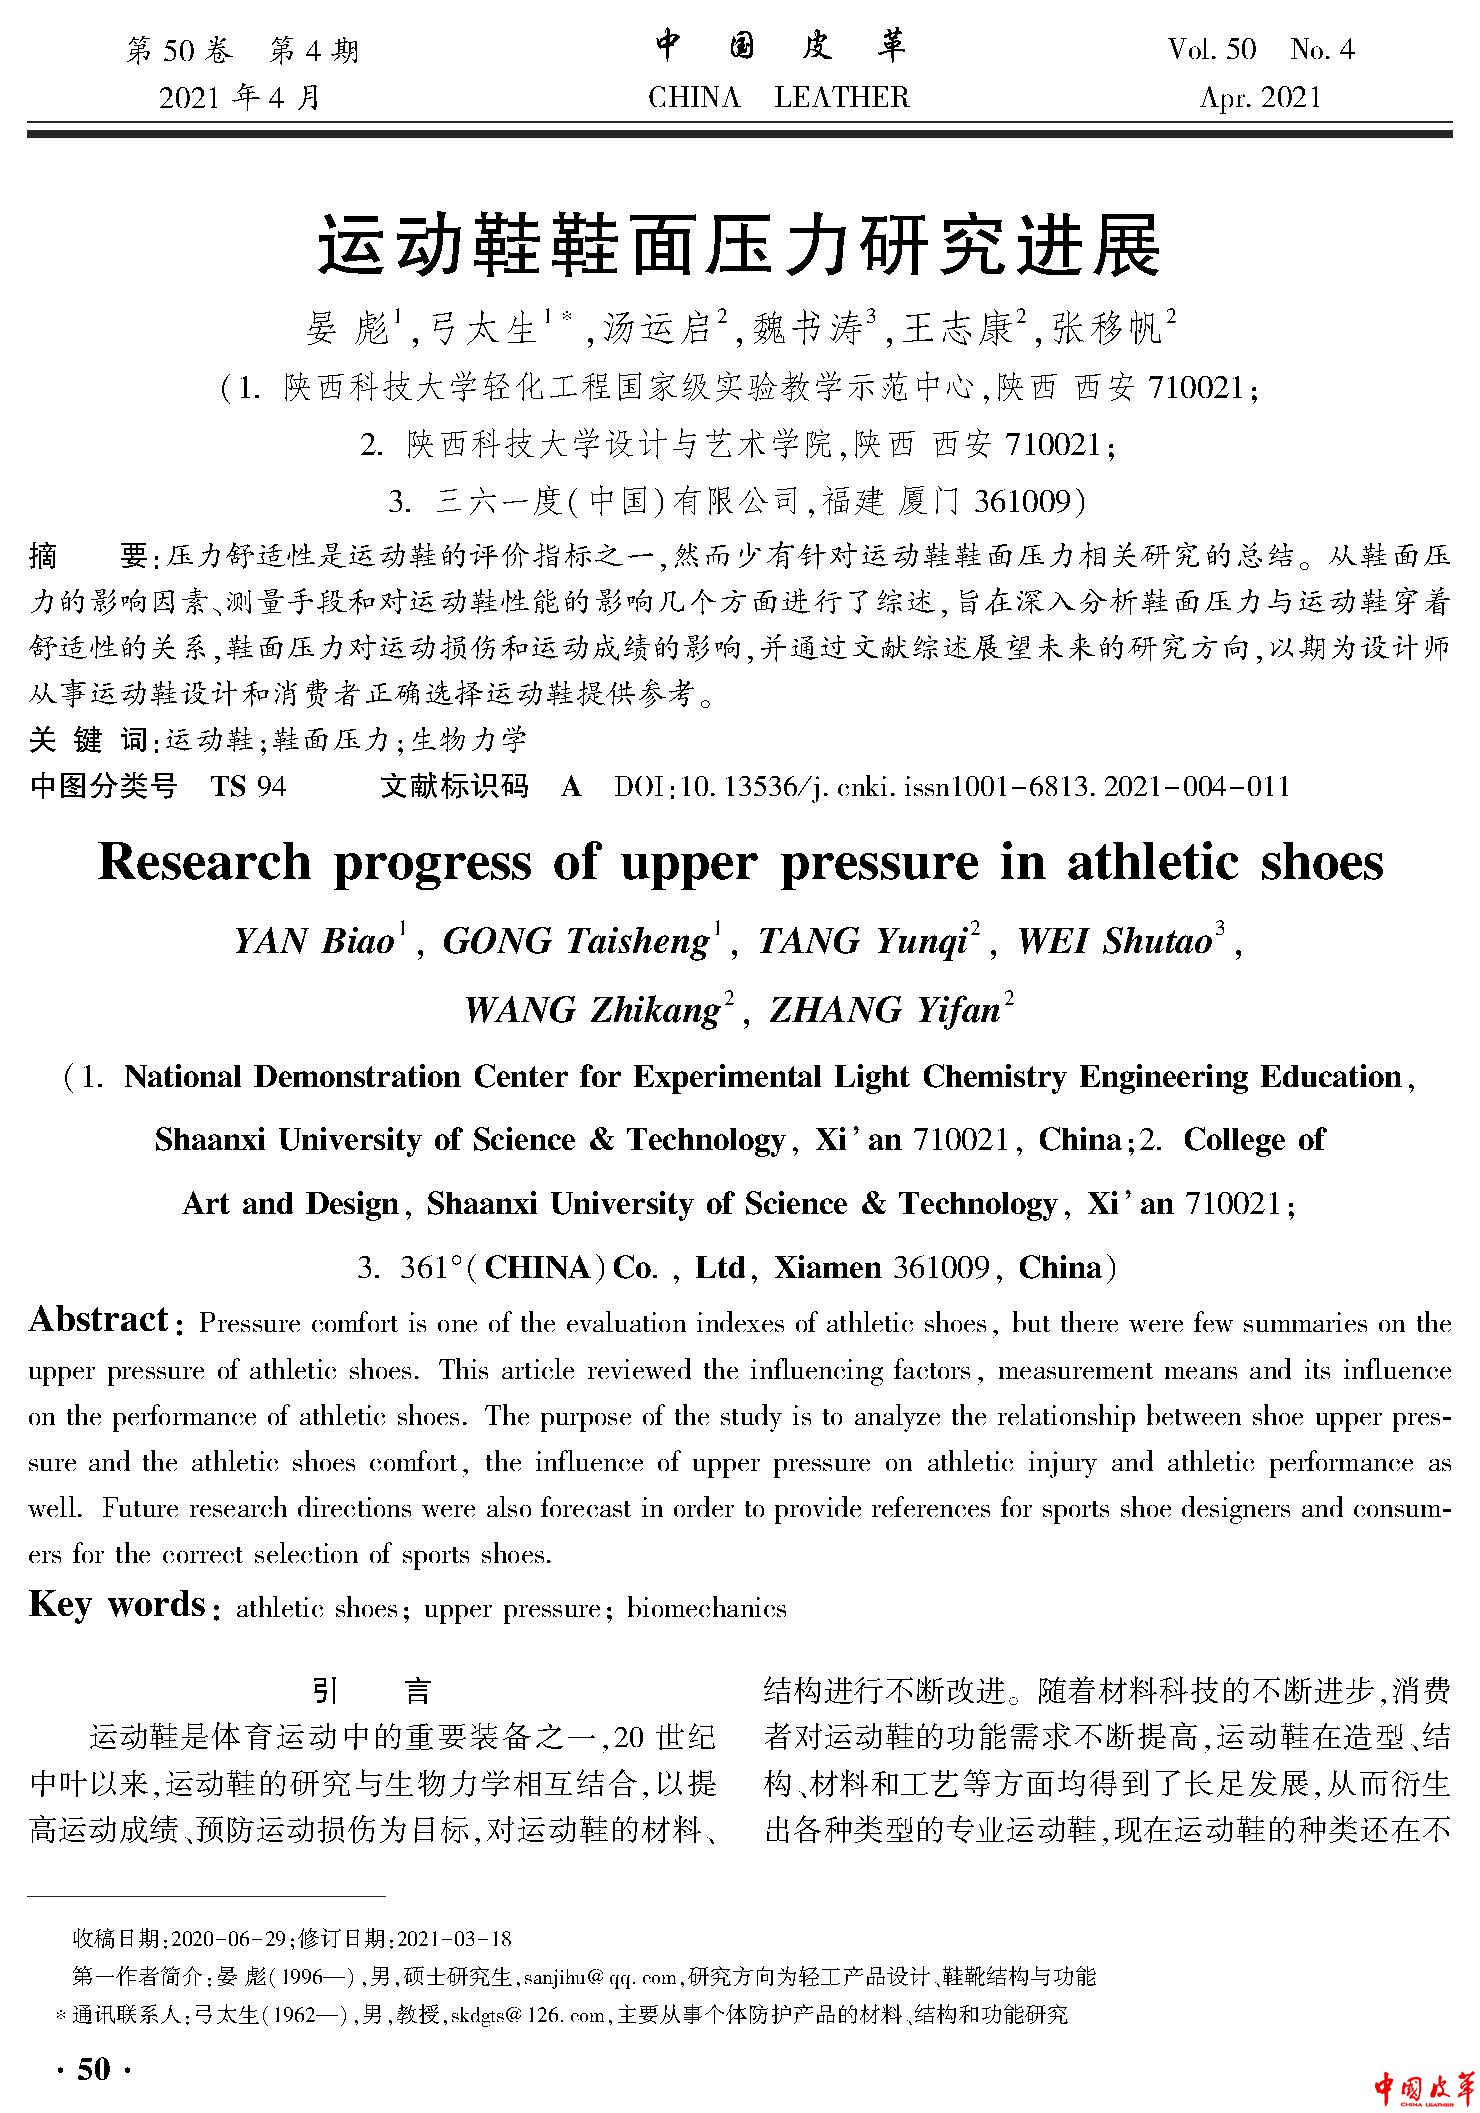 页面提取自－运动鞋鞋面压力研究进展.jpg